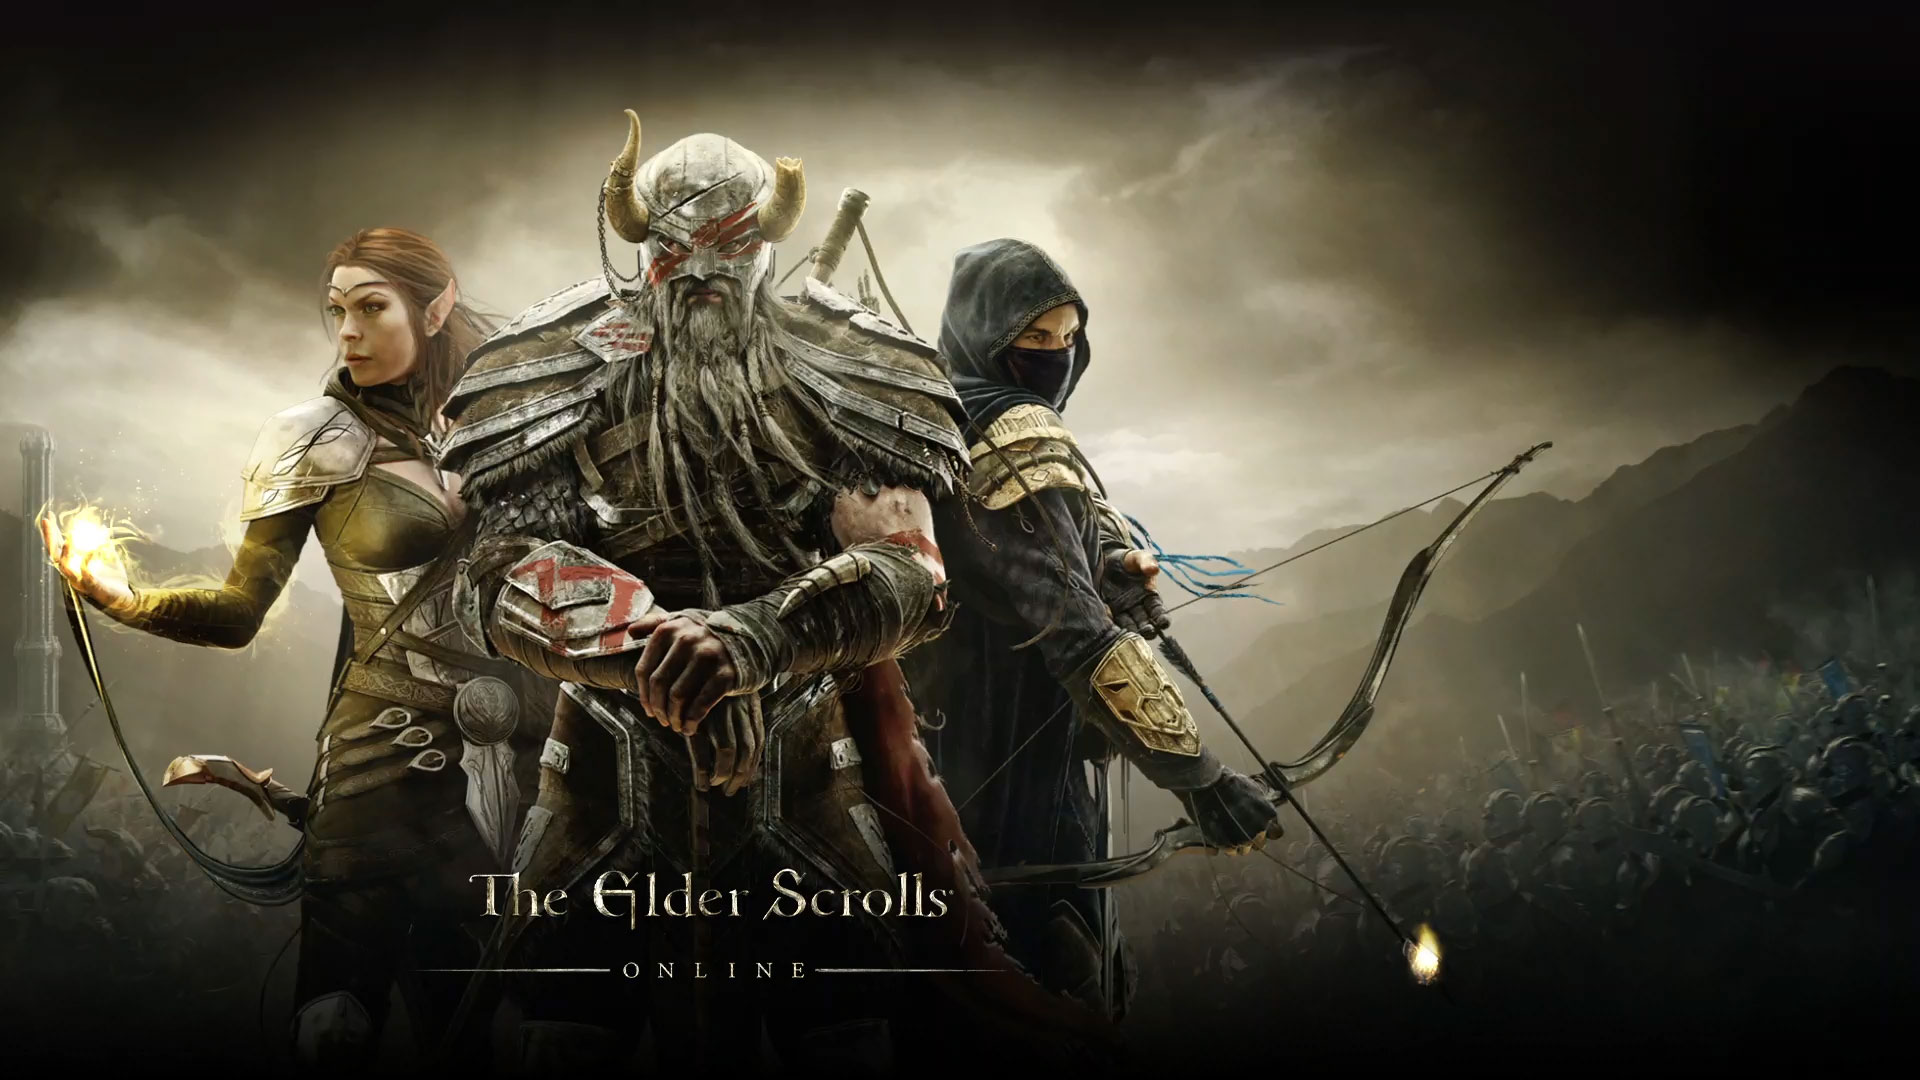 Diretor indica que Elder Scrolls 6 está em produção - 22/11/2016